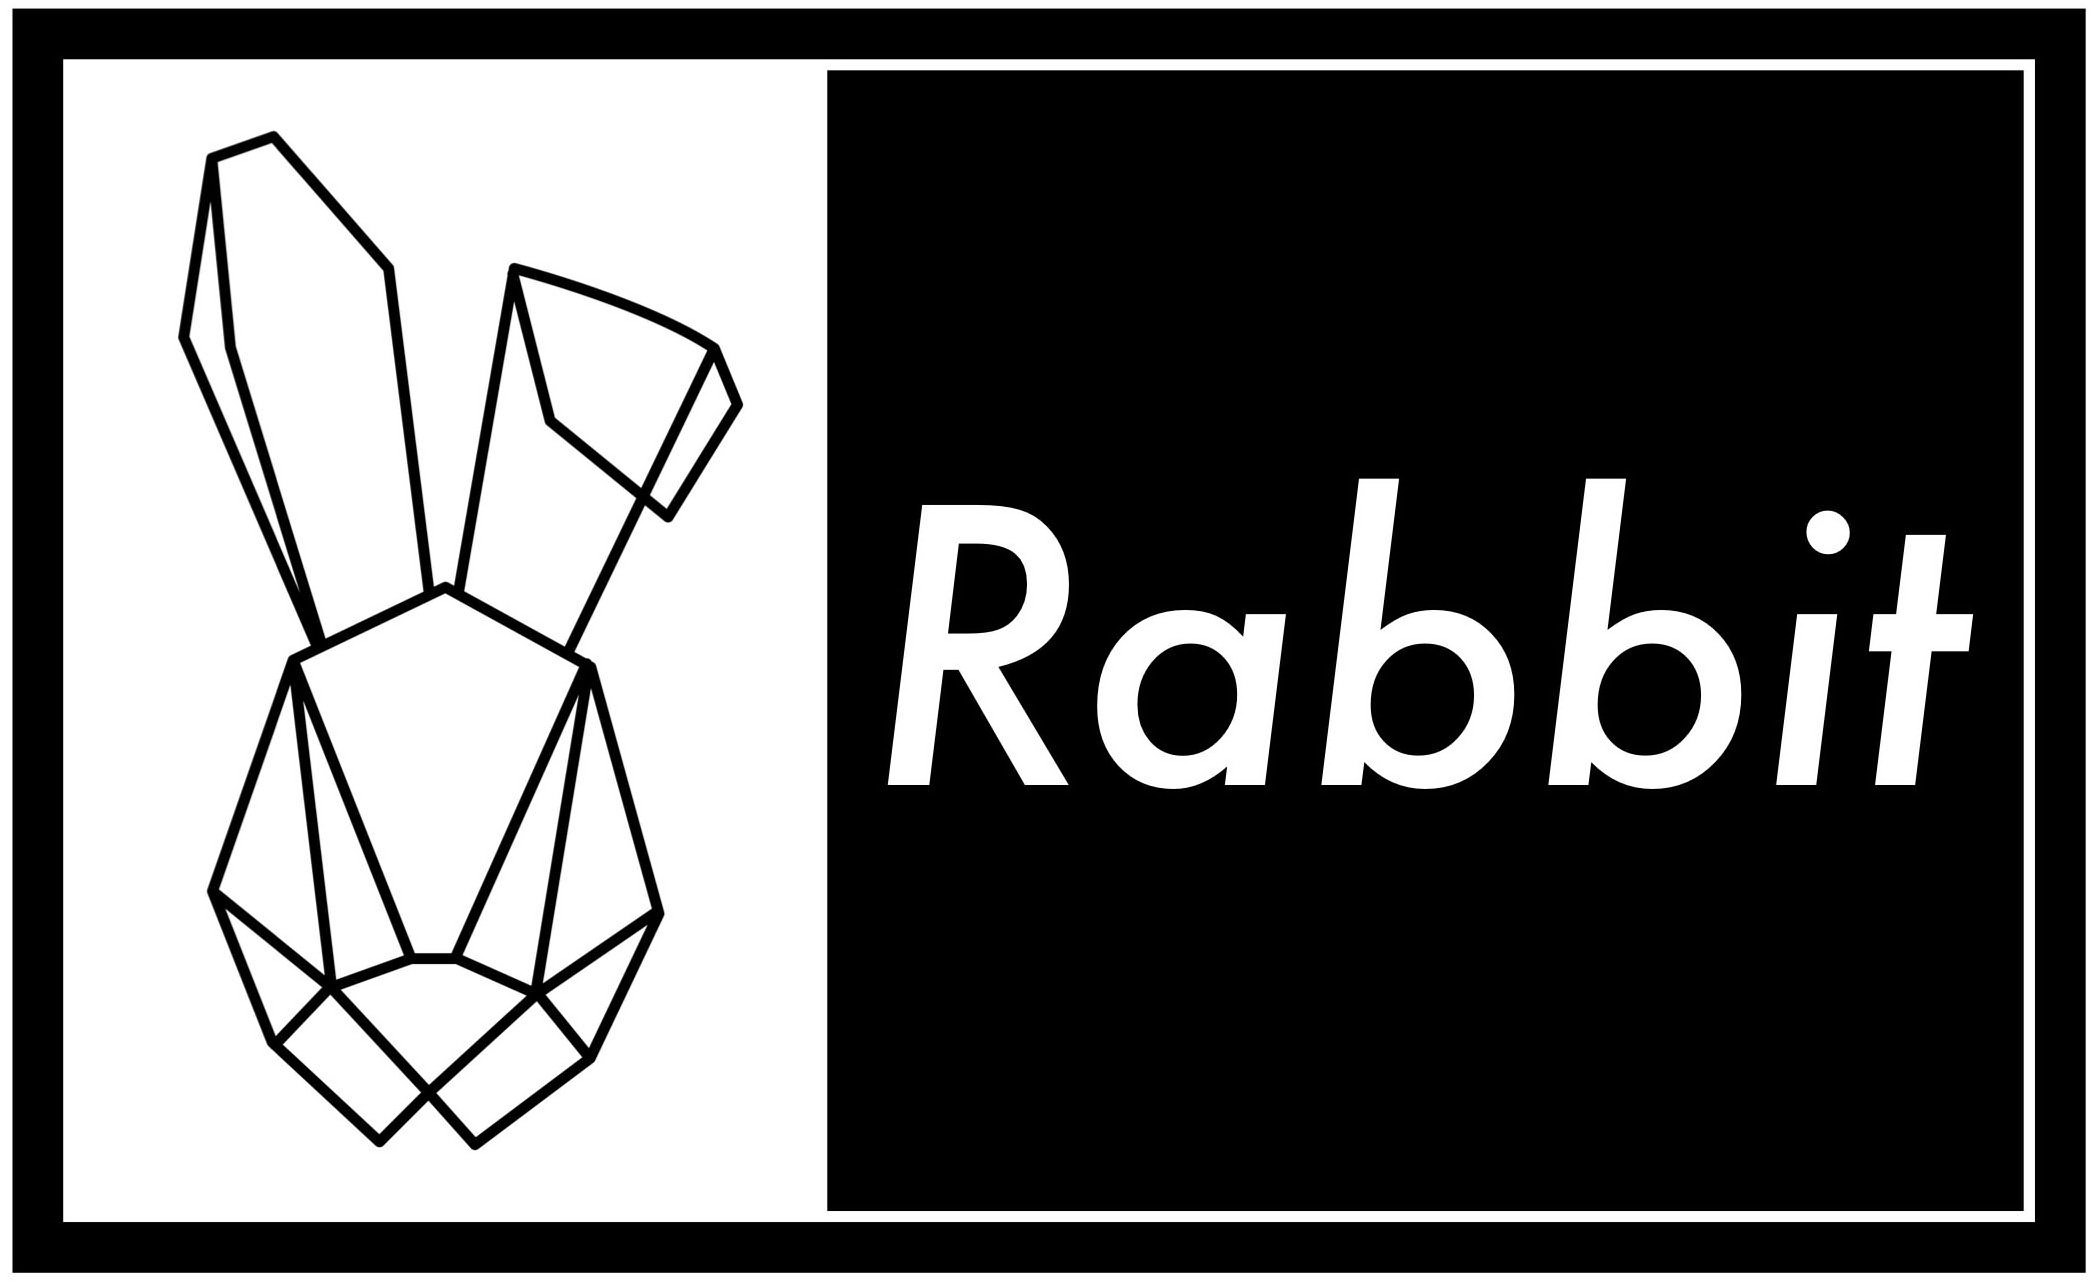 RABBIT - Villegas, Barbara Trademark Registration